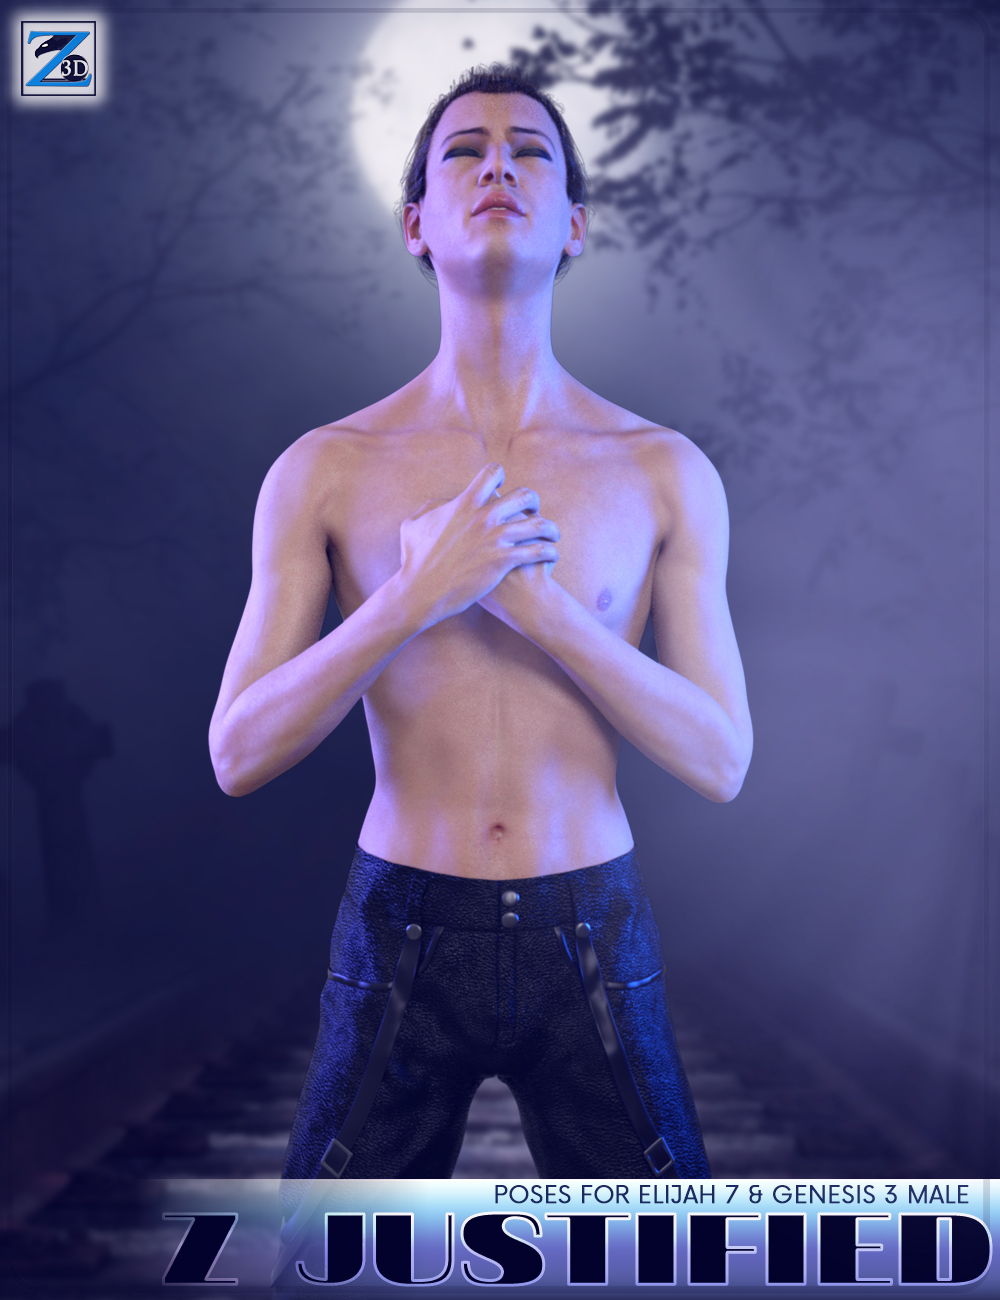 Z Justified - Poses for Elijah 7 & Genesis 3 Male by: Zeddicuss, 3D Models by Daz 3D